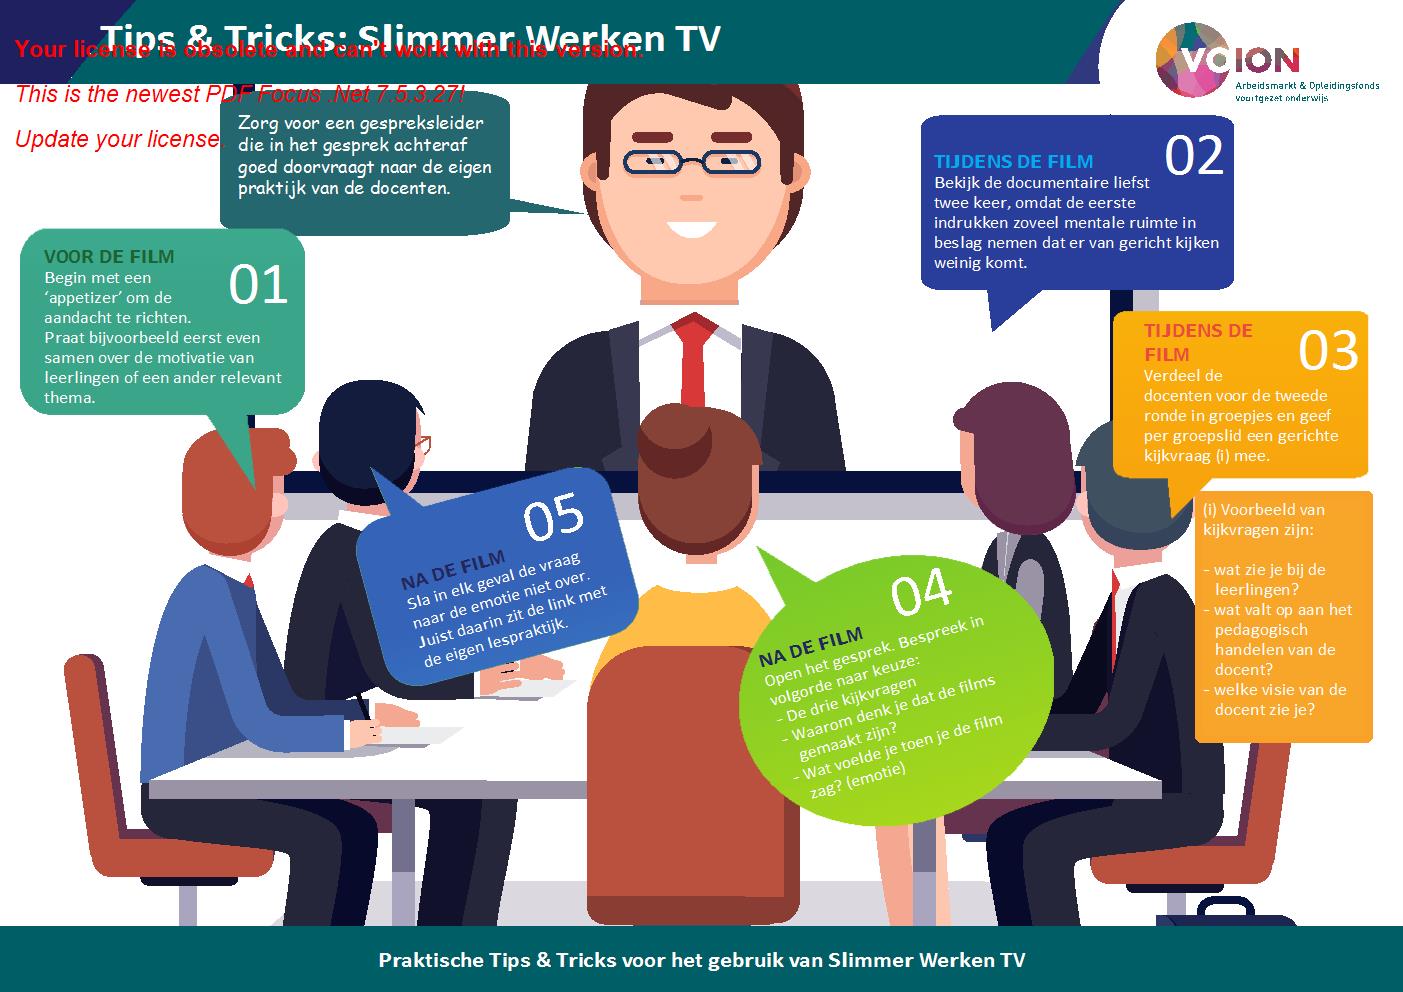 Tips Platform Noord-Holland-Noord: Praktische tips voor het gebruik van Slimmer Werken TV